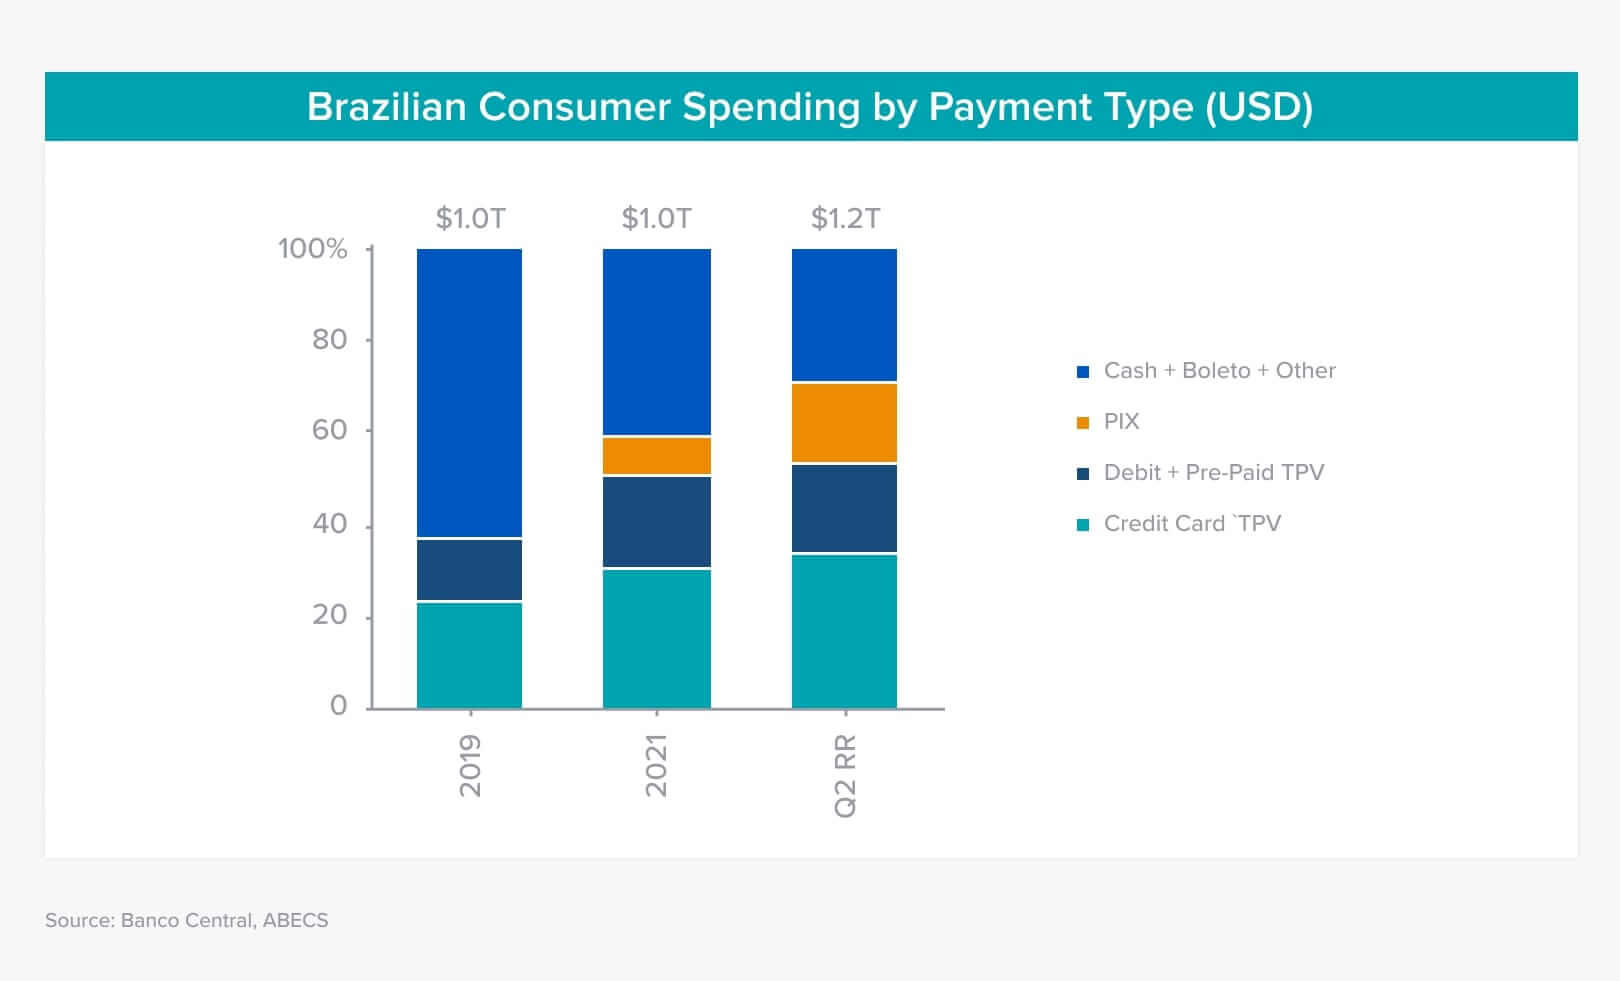 Gasto do consumidor brasileiro relacionado ao Pix, Boleto e Cartões